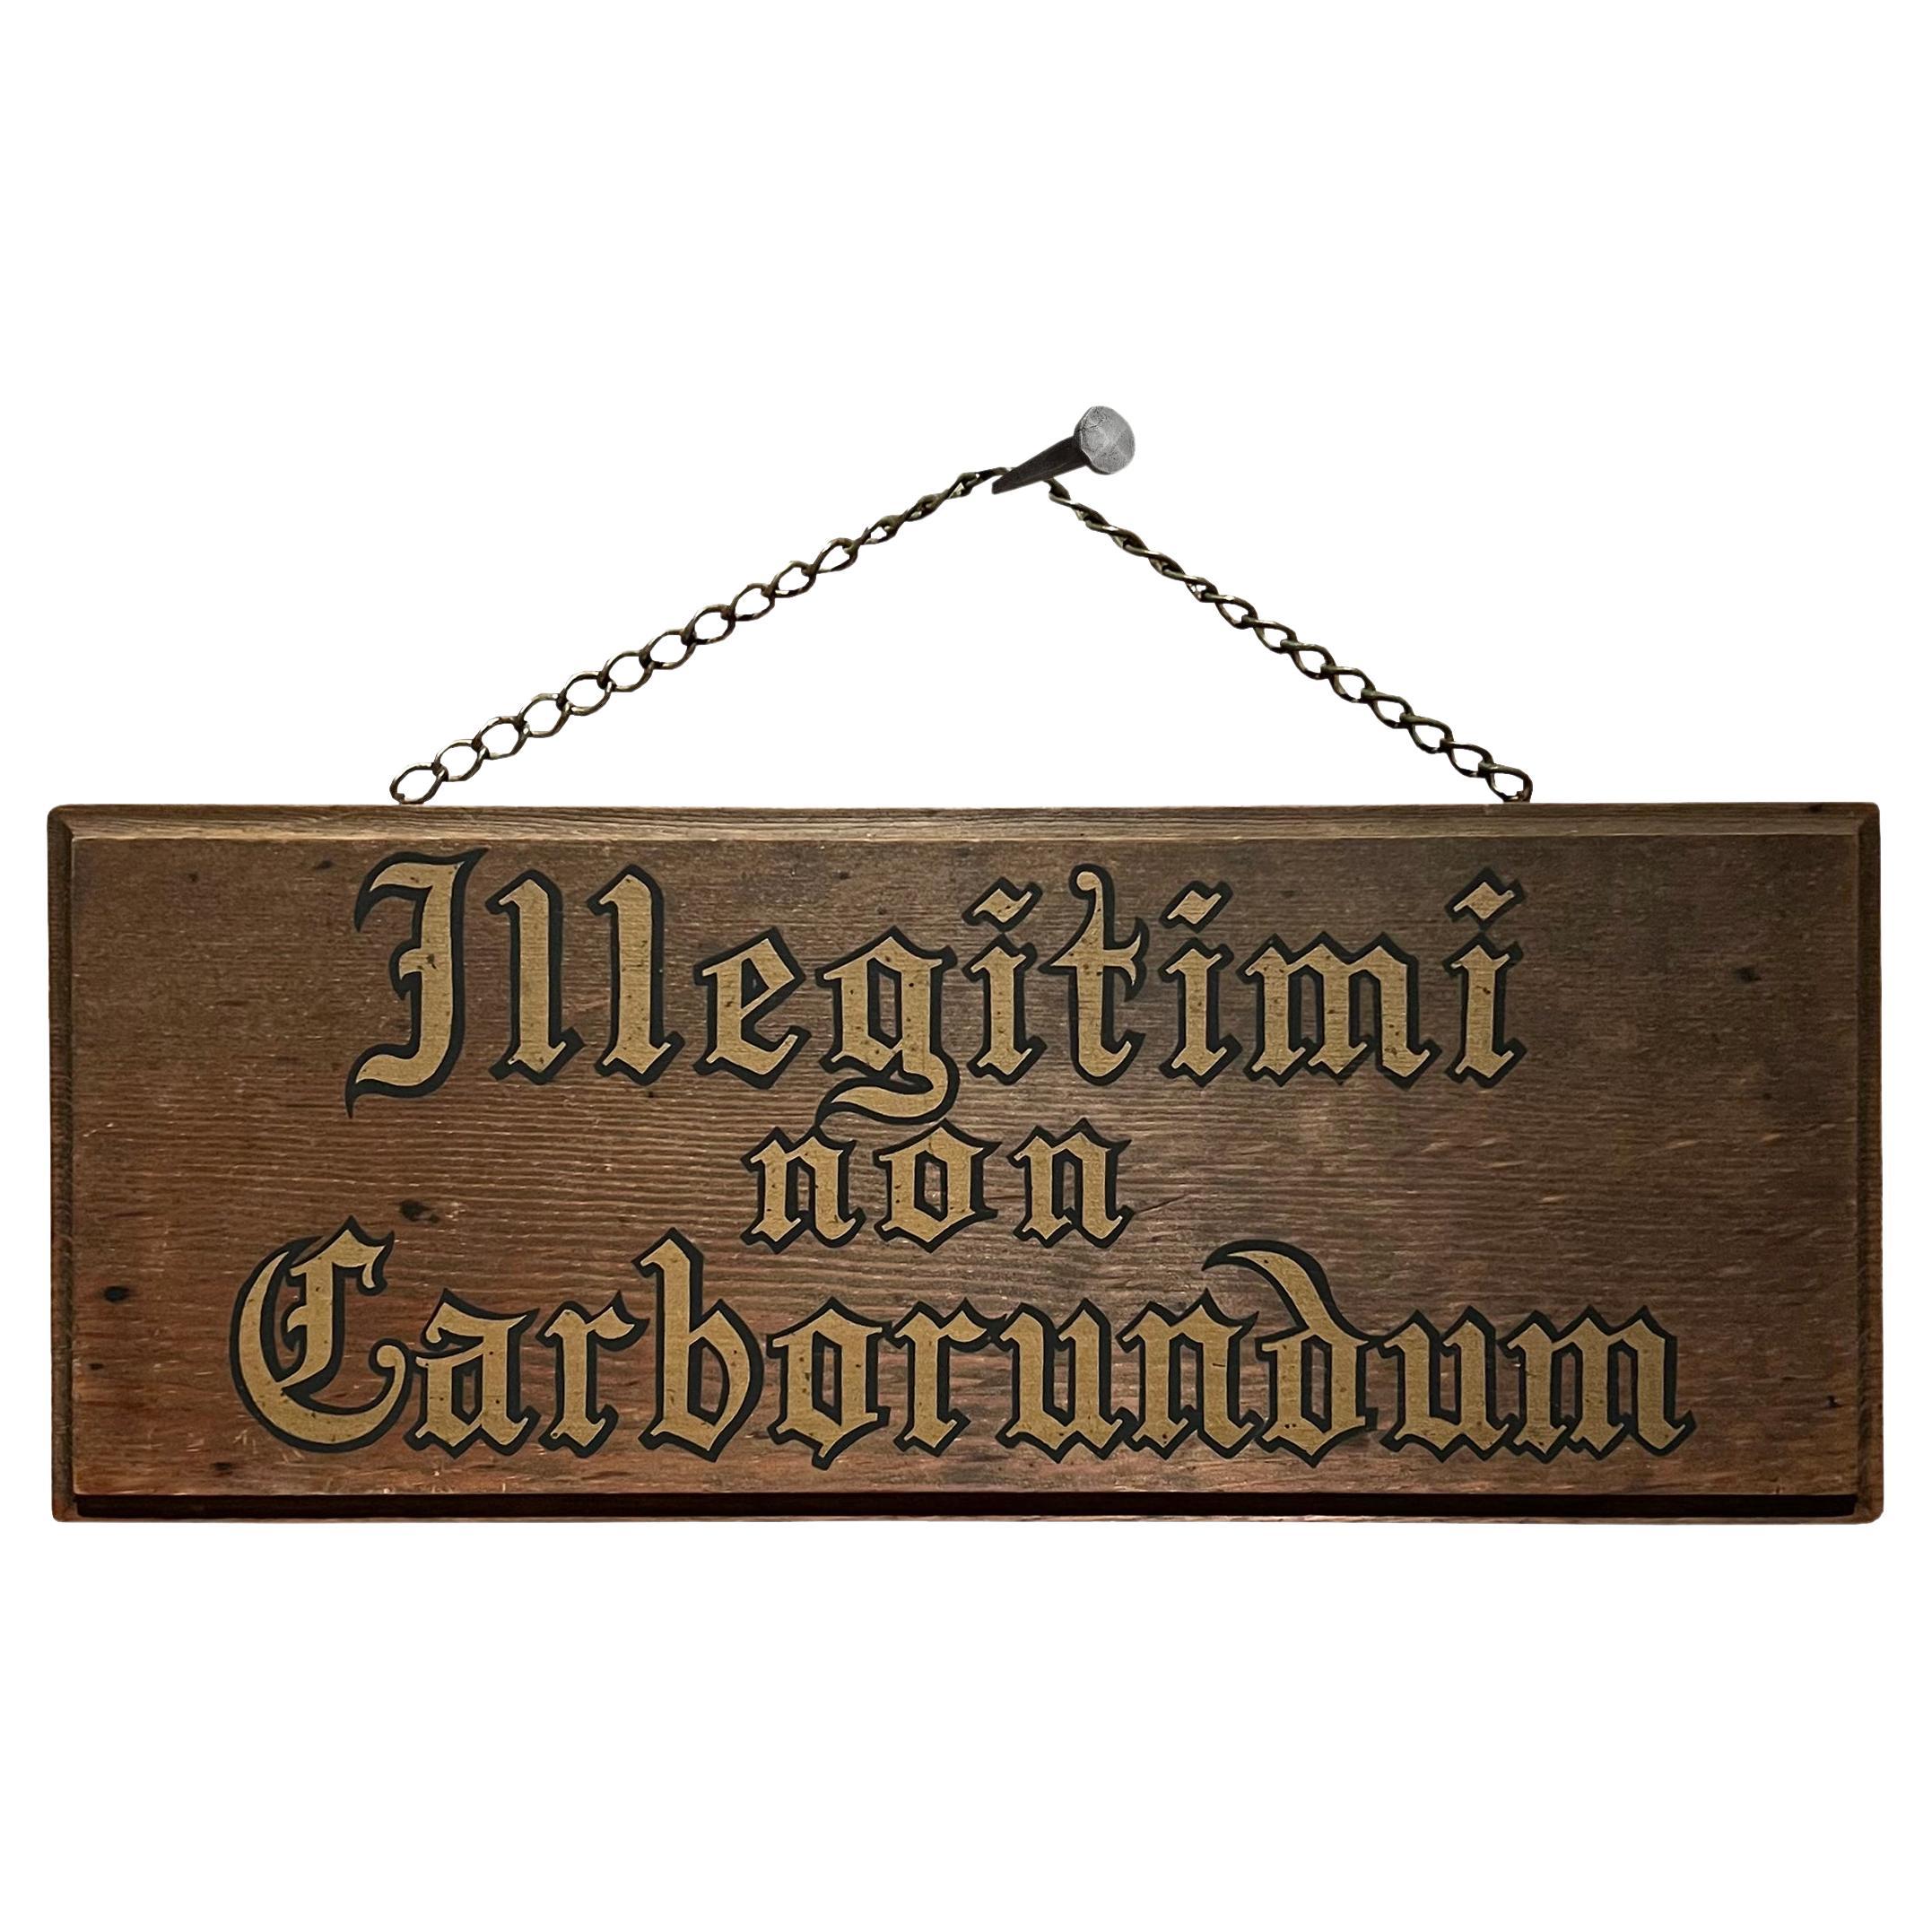 Mid-20th Century 'Illegitimi non Carborundum' Sign For Sale